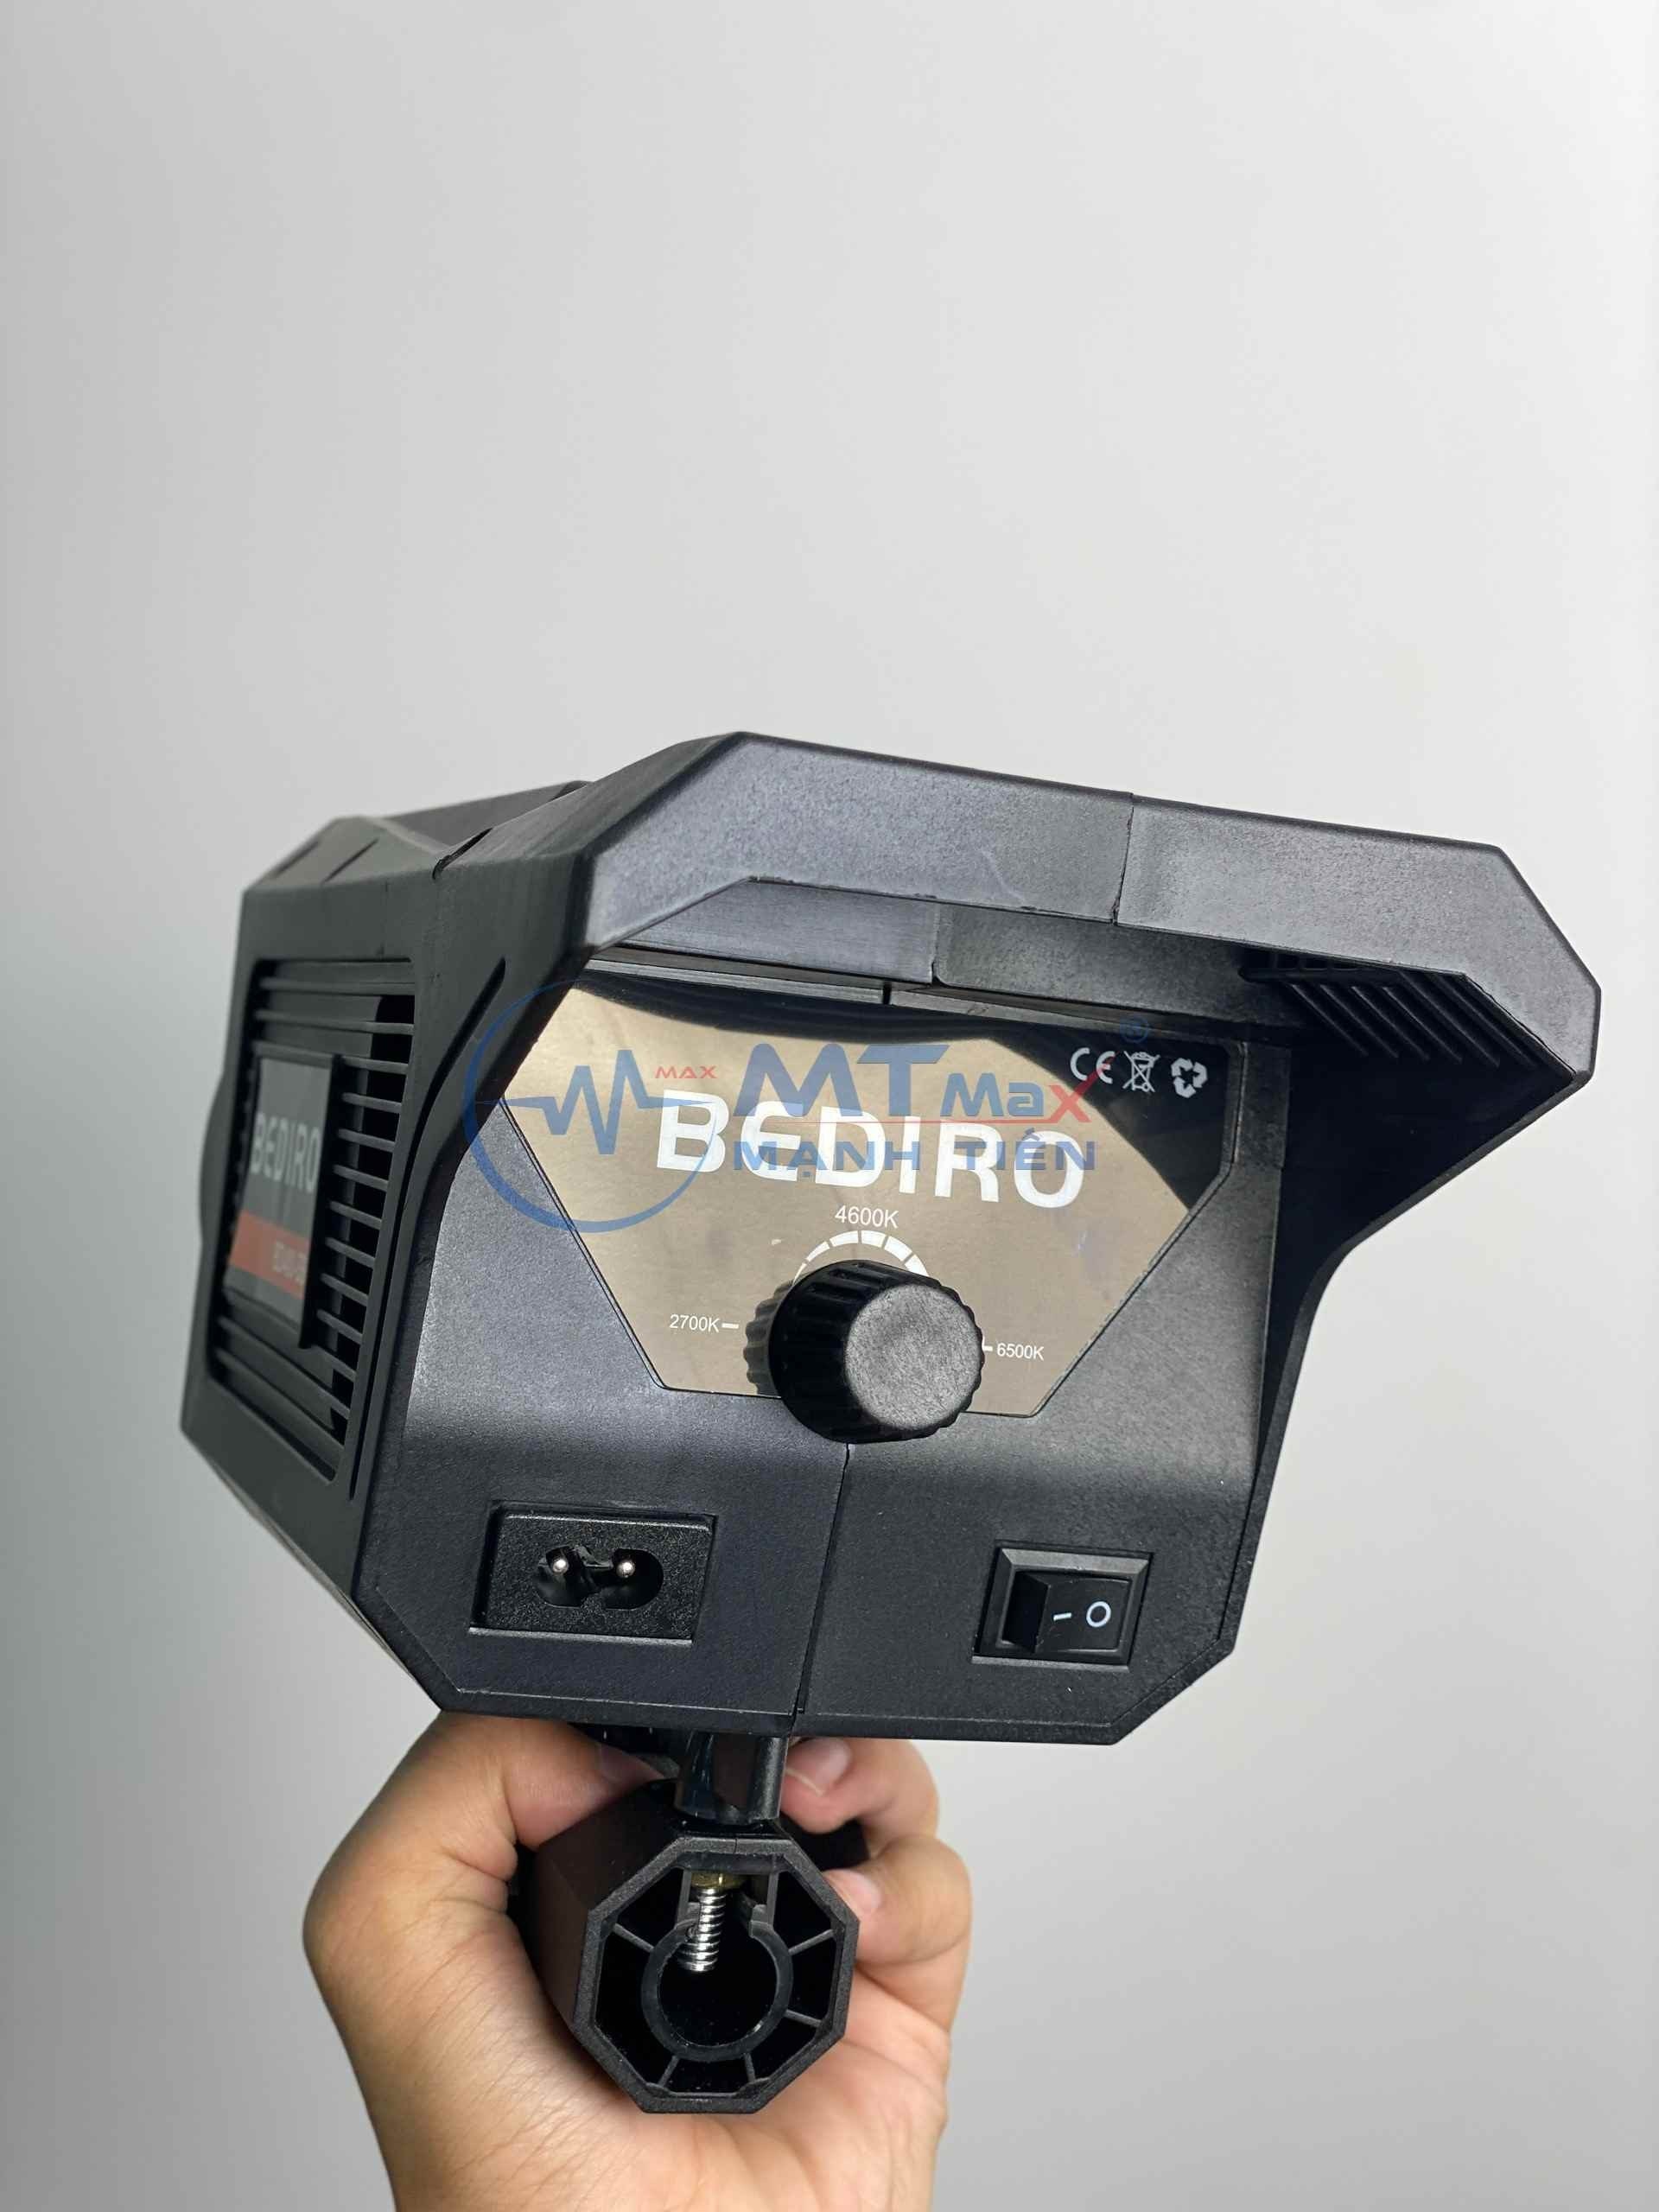 Đèn Trợ Sáng Bediro Studio Chuyên Nghiệp Kèm Chân Xịn - Đèn Mặt Trăng - Gọn Nhẹ Dễ Dàng Sử Dụng chụp ảnh quay video bảo hành 12 tháng New version